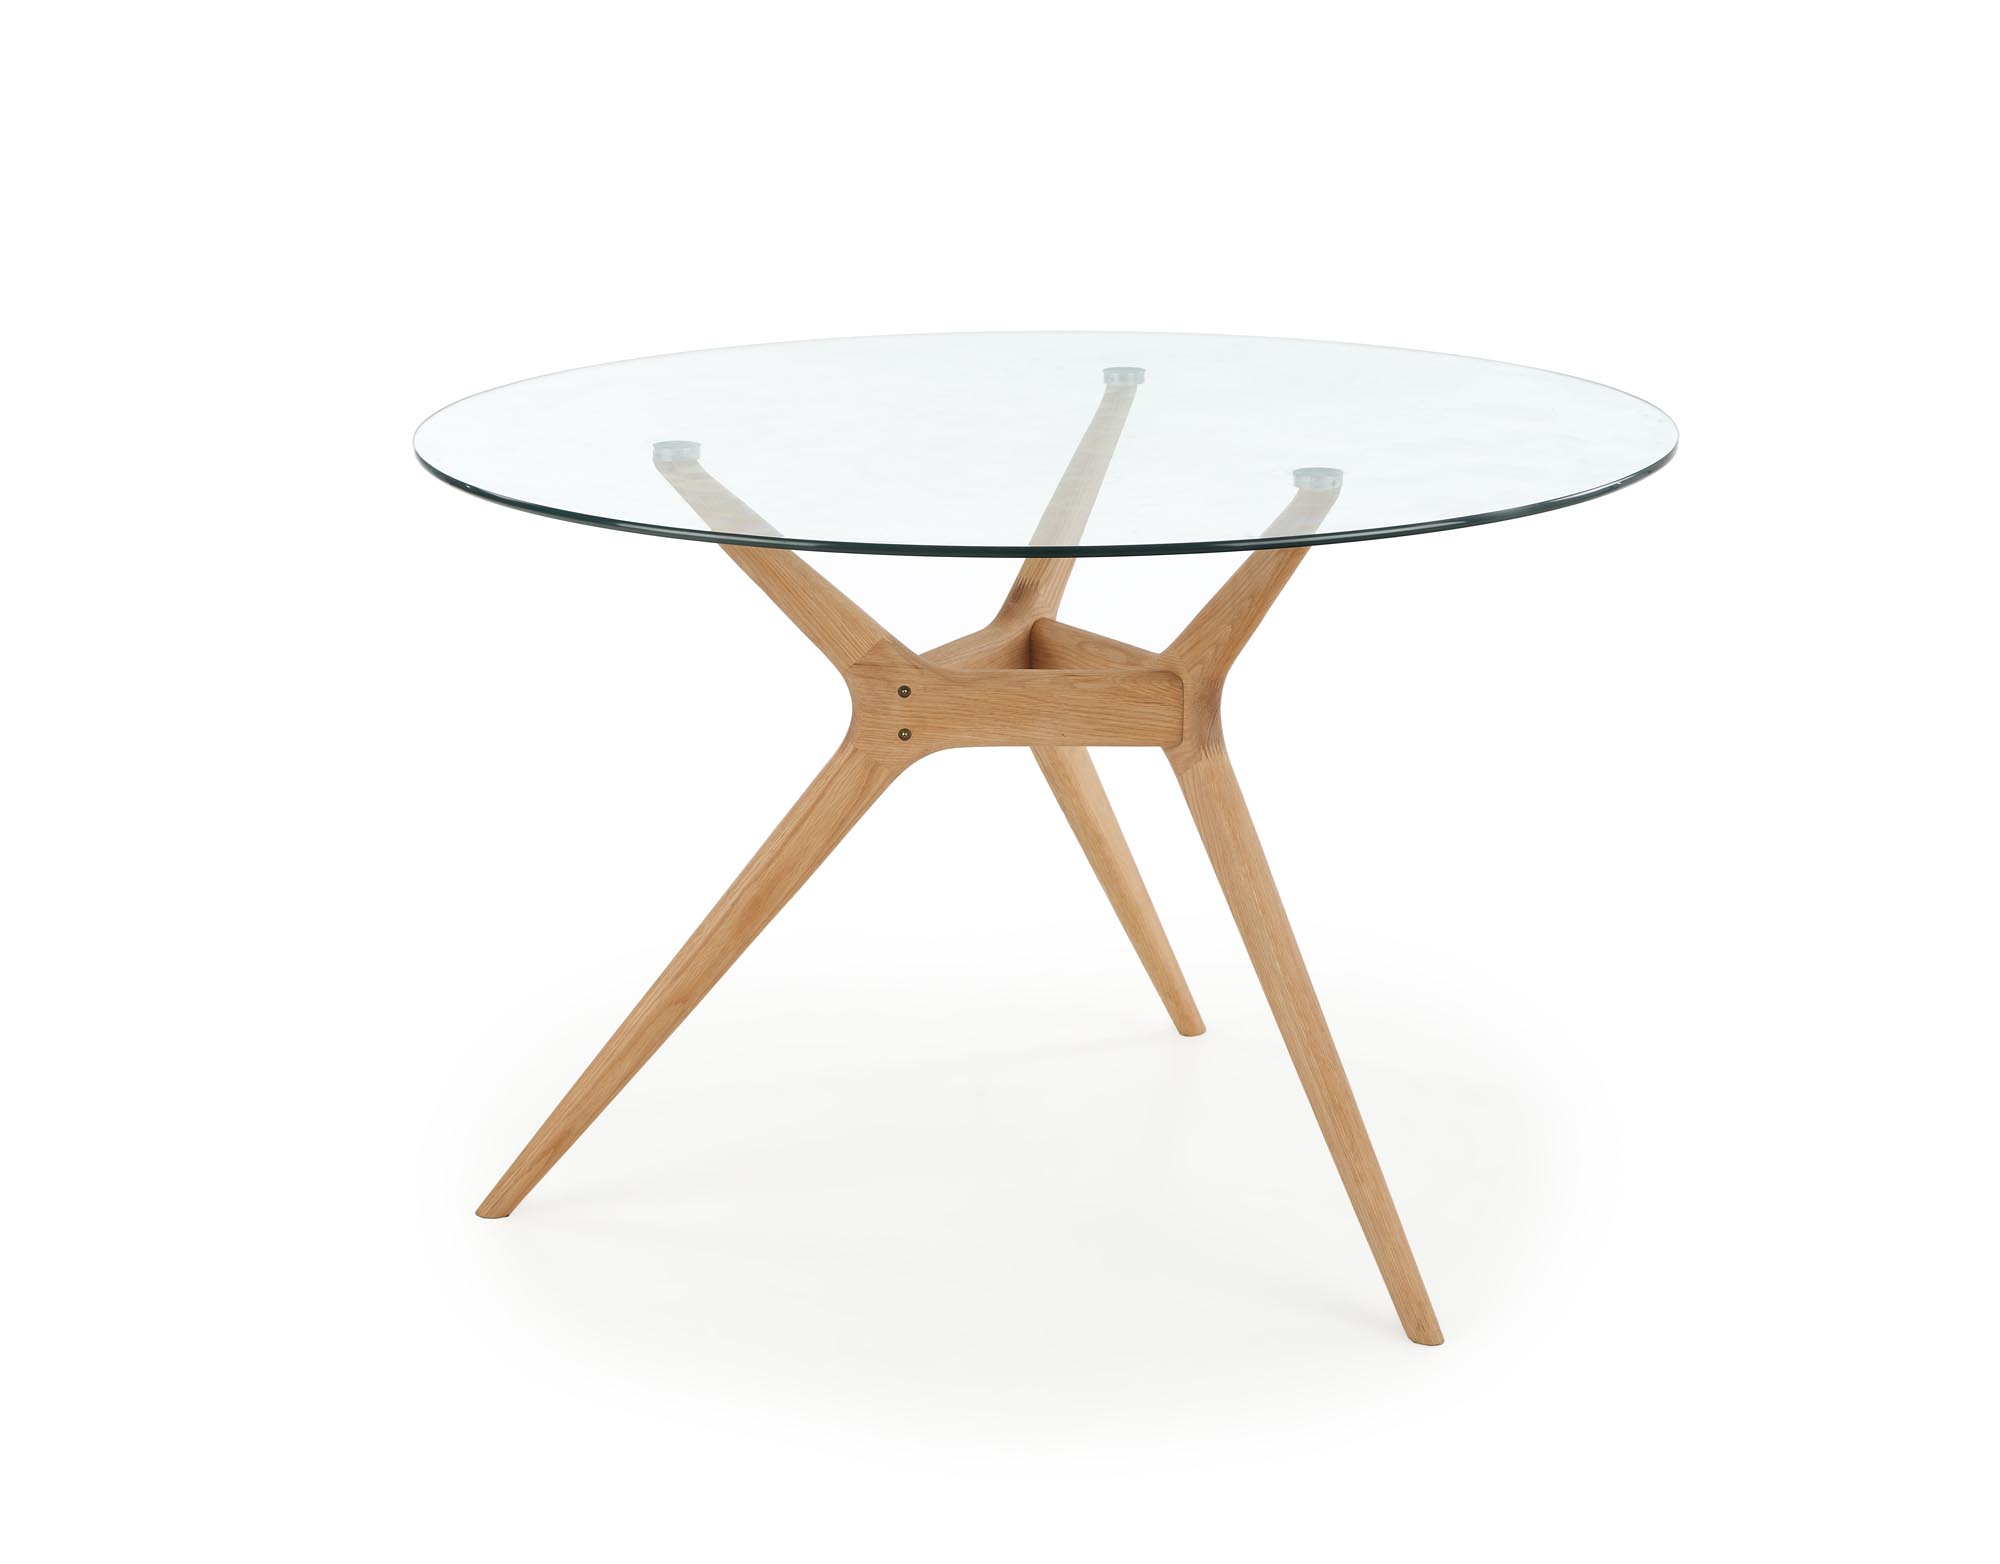 ASHMORE stůl Deska - transparentní, noha - přírodní ashmore stůl Deska - transparentní, noha - přírodní